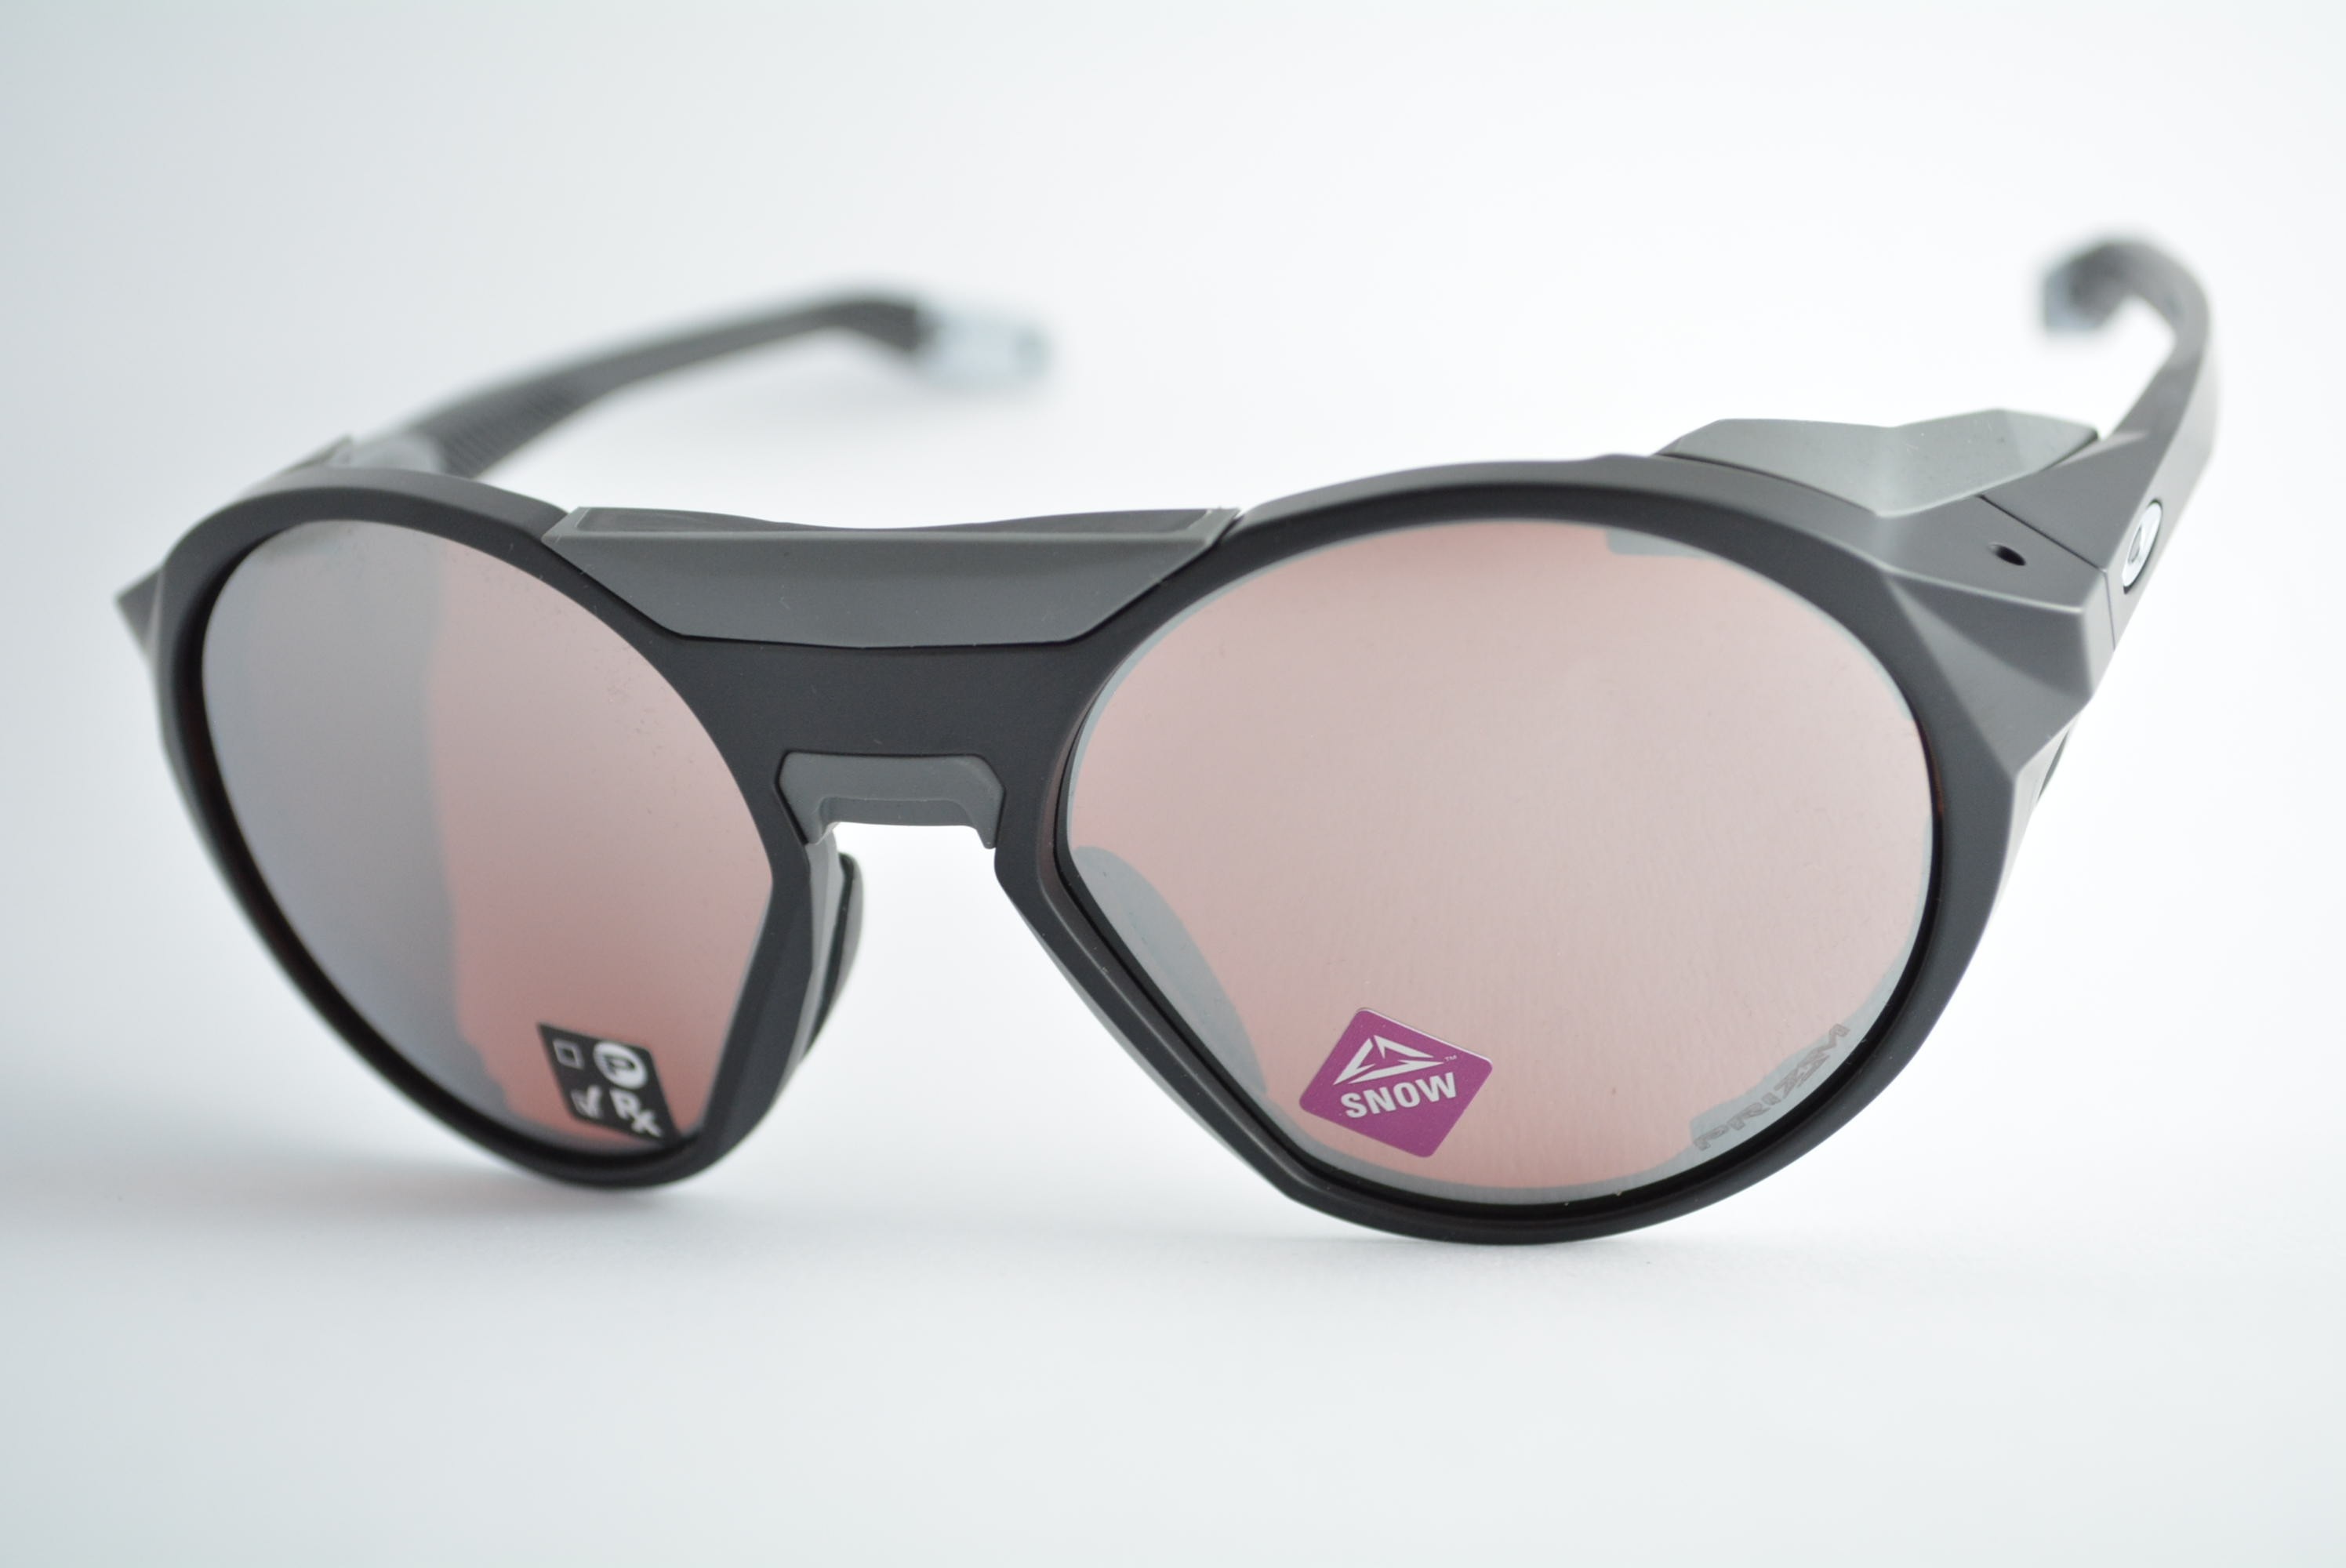 Óculos de Sol Oakley Clifden Prizm Masculino - Preto